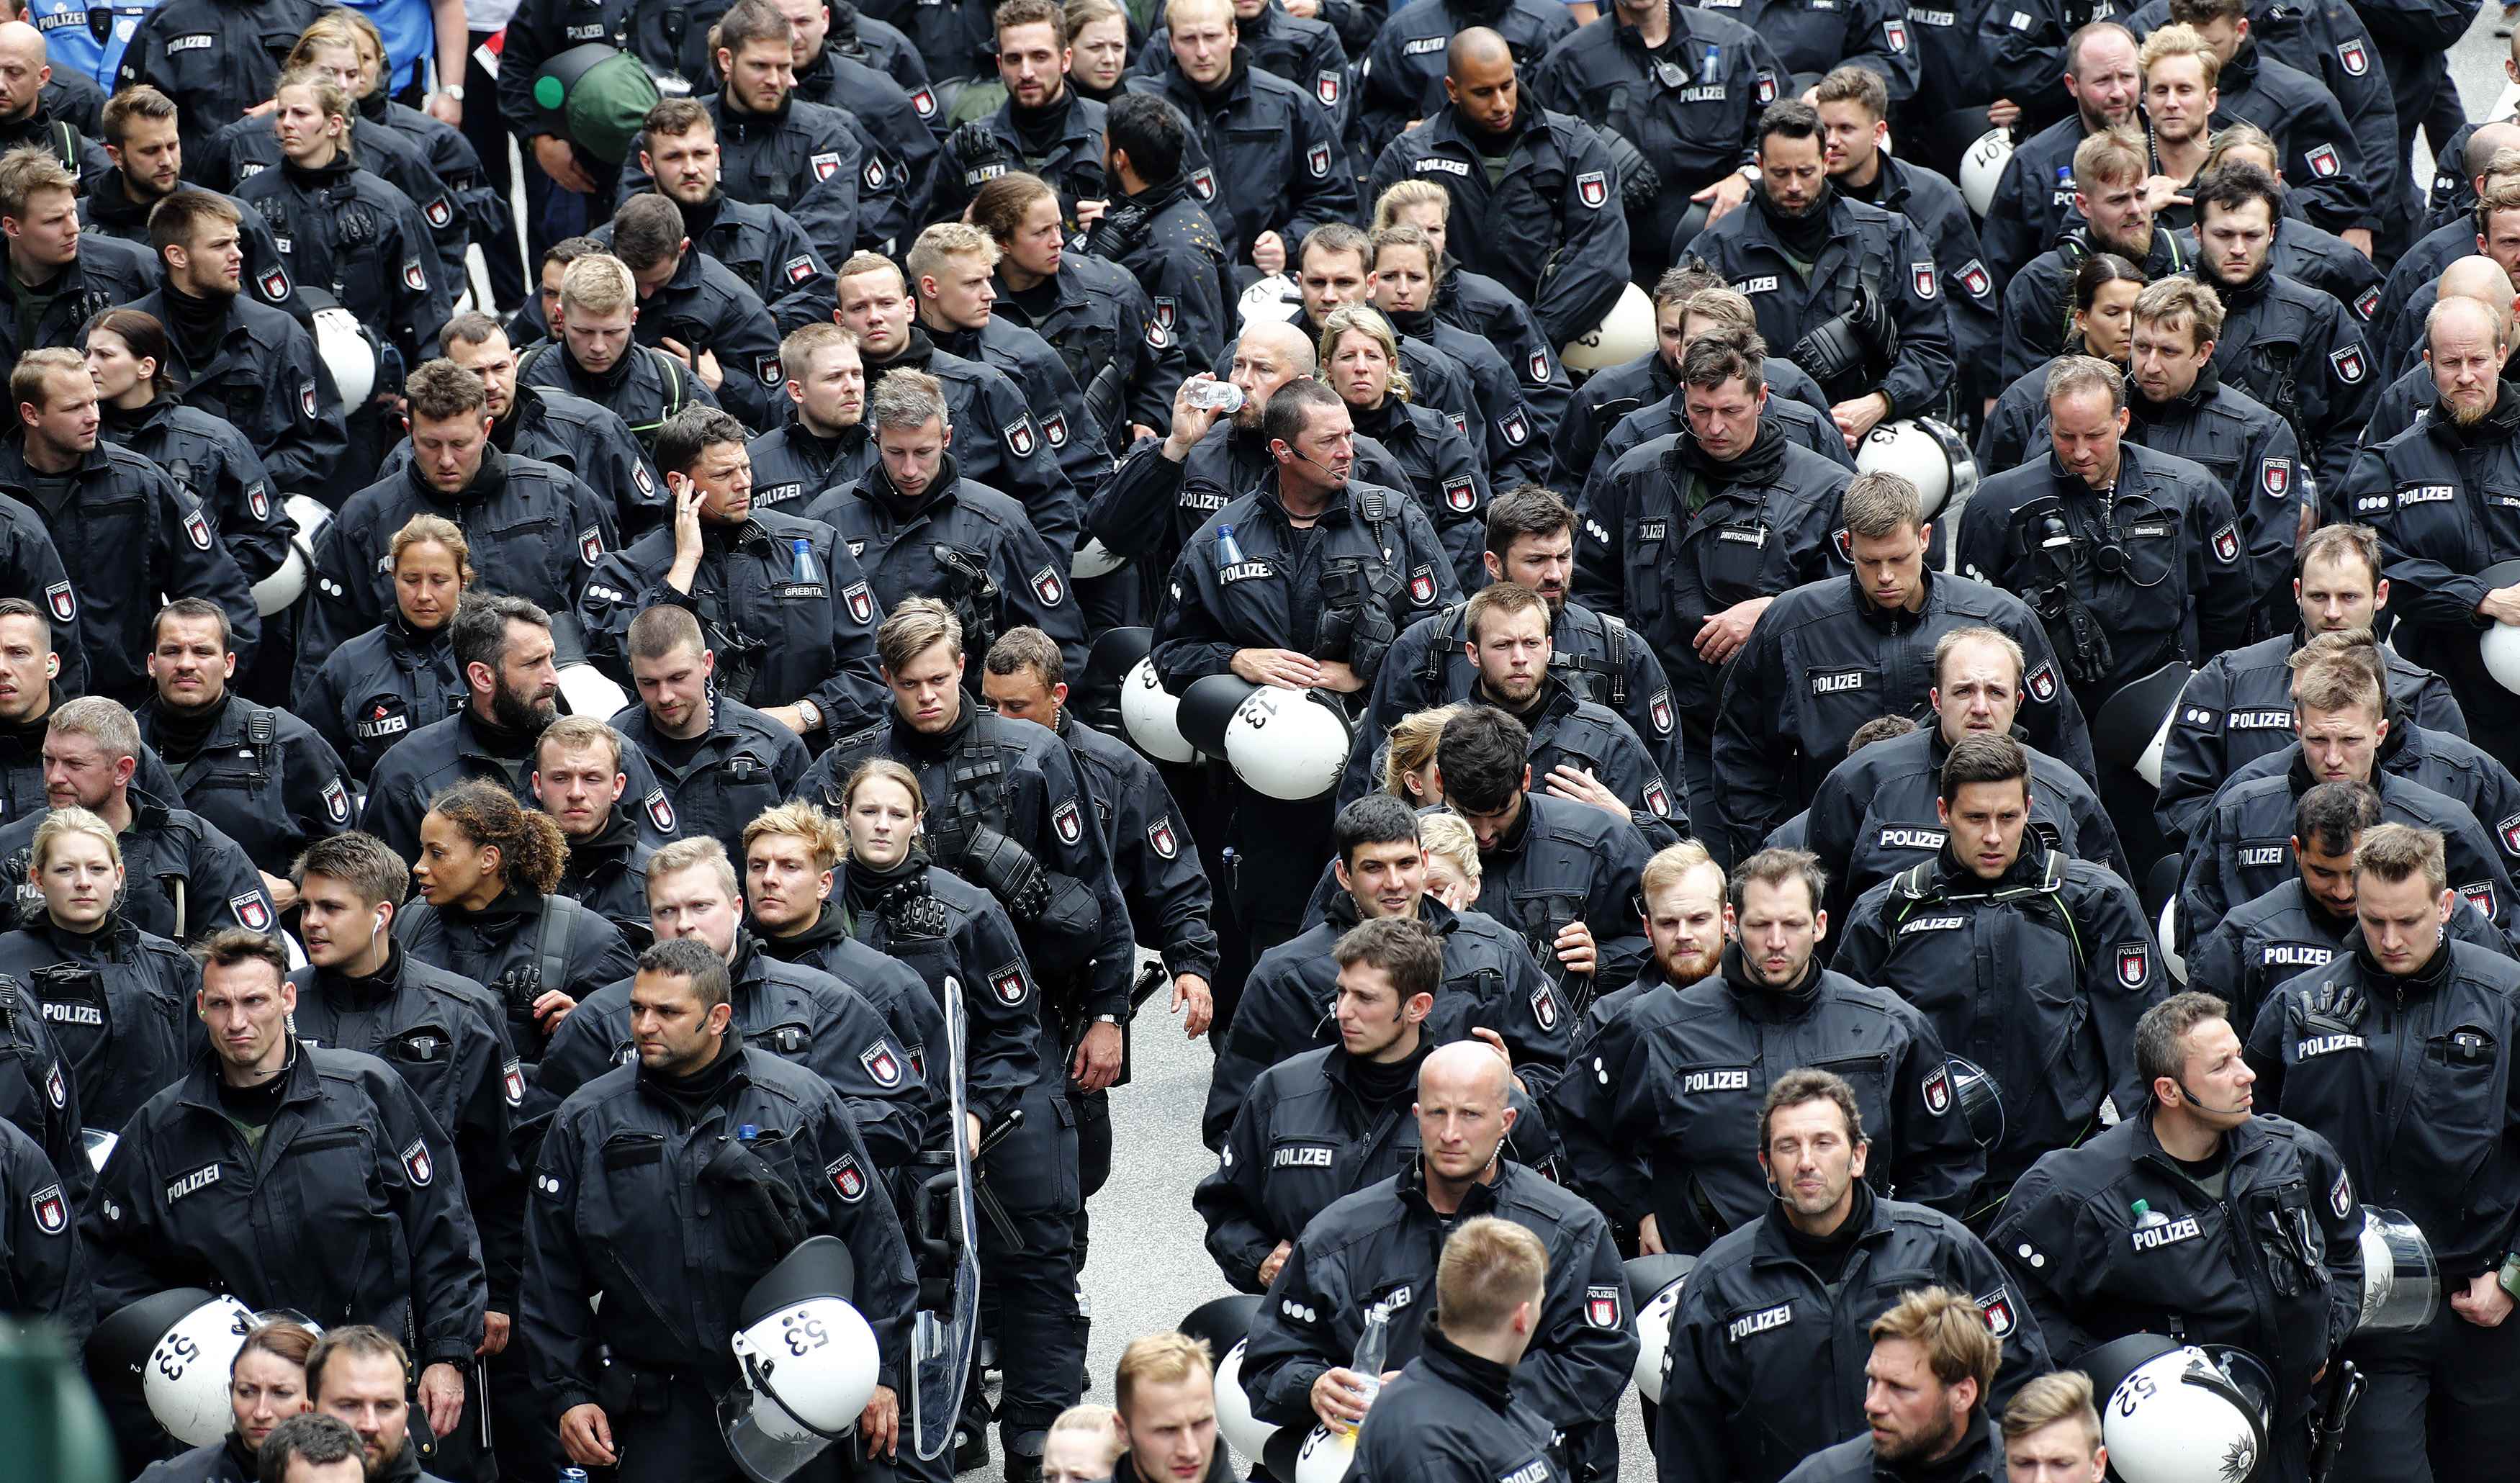 أعداد كبيرة من الشرطة الألمانية لتأمين المظاهرات فى هامبورج